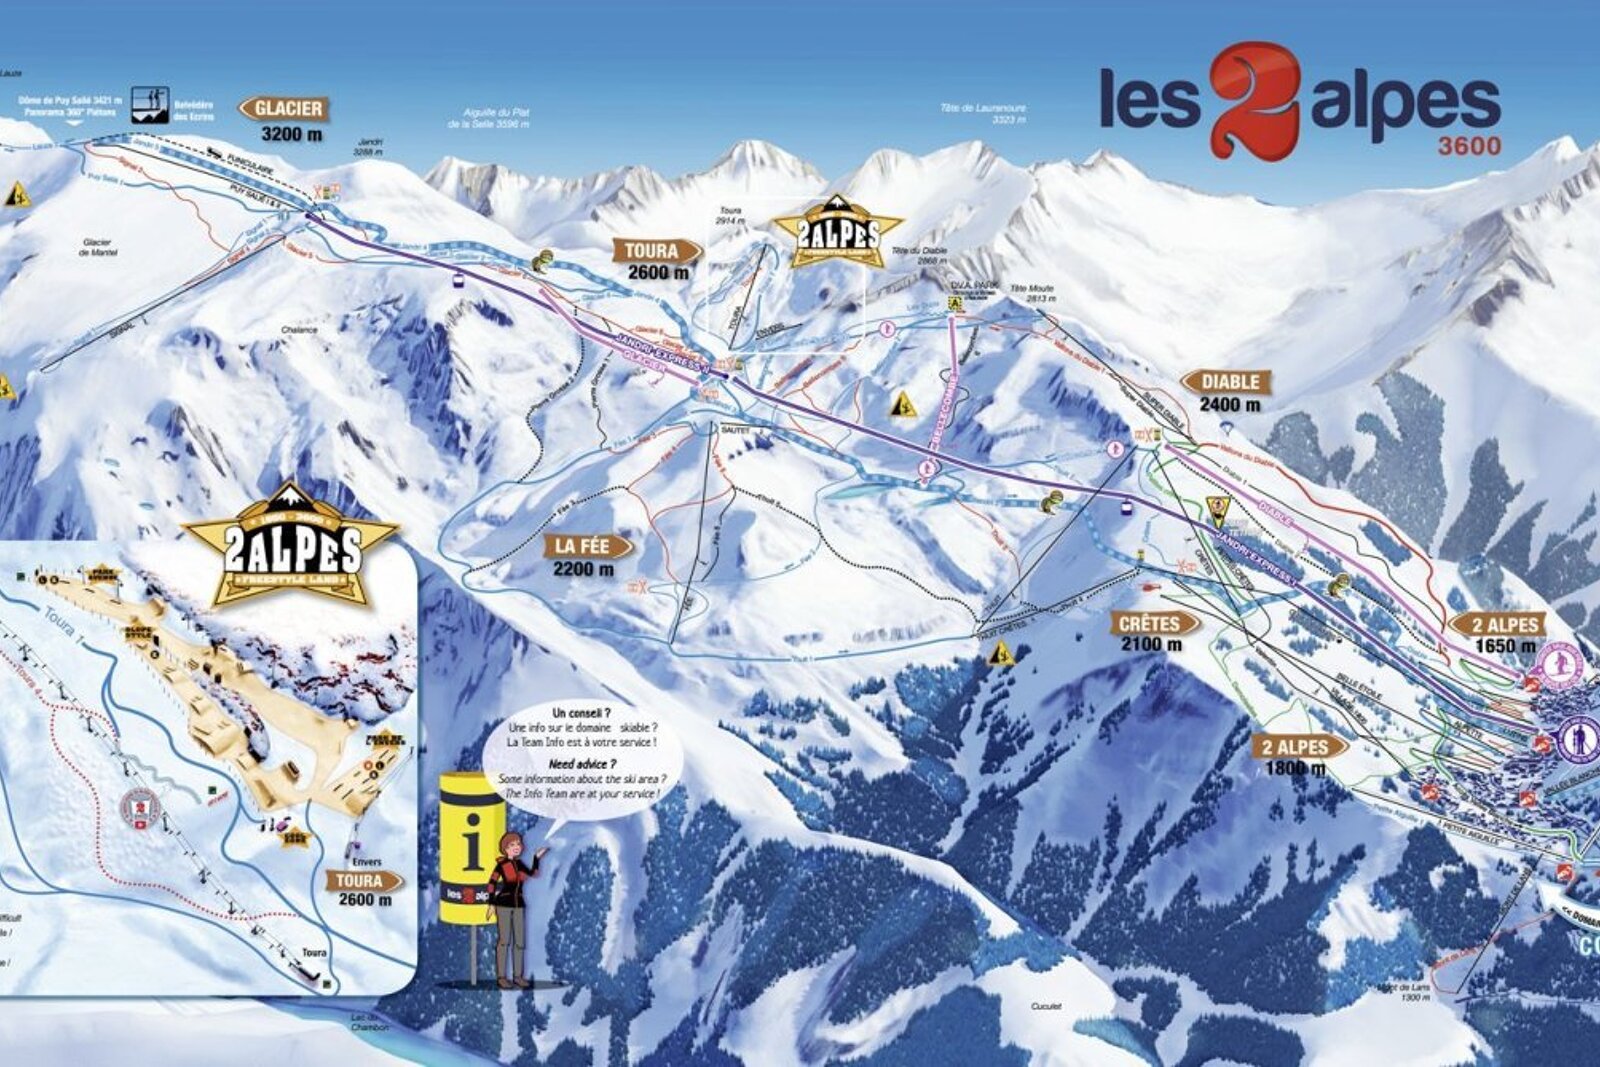 Maps of Les 2 Alpes